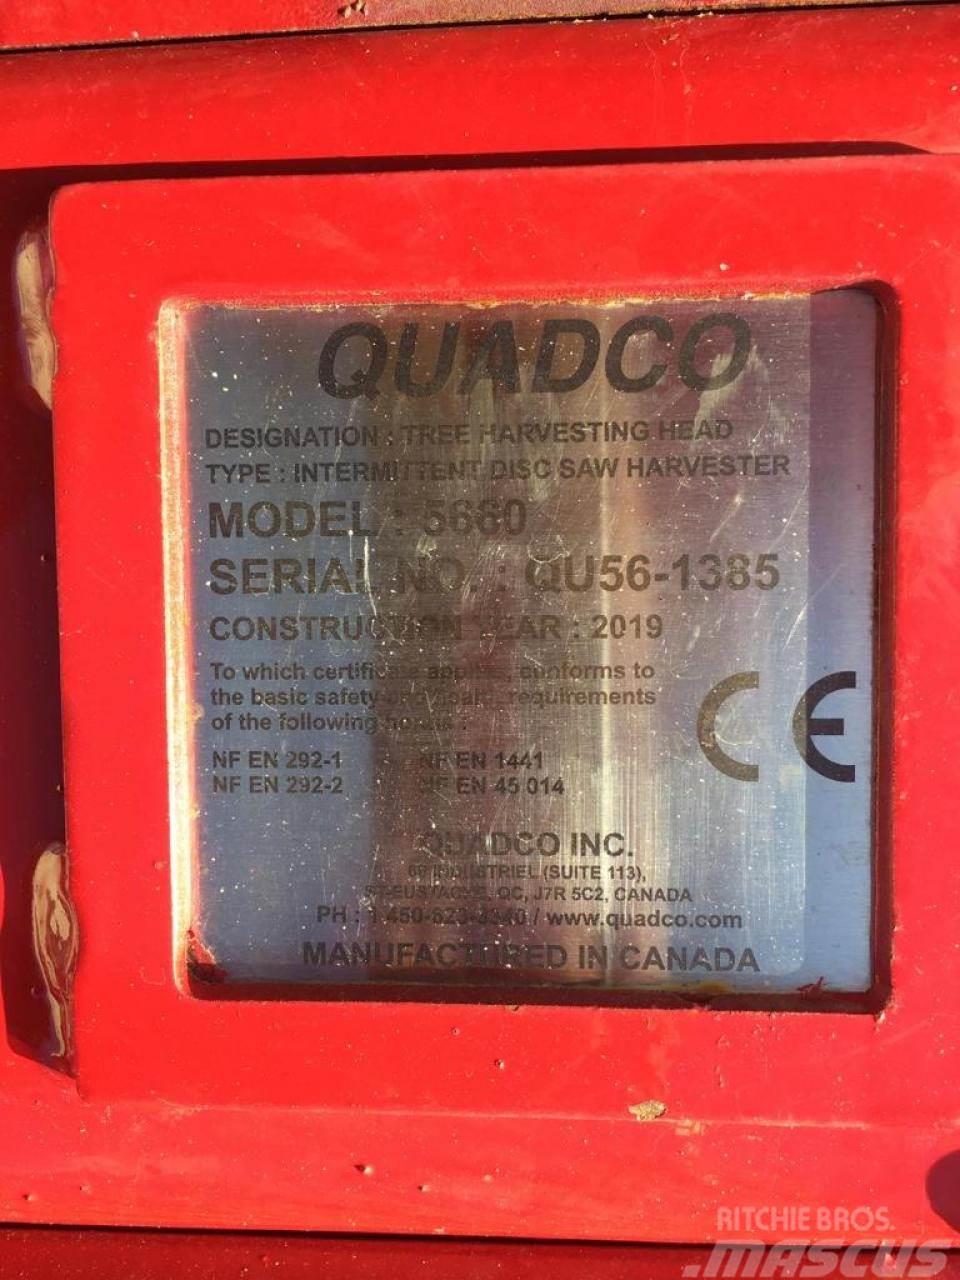  Quadco 5660 Pinze